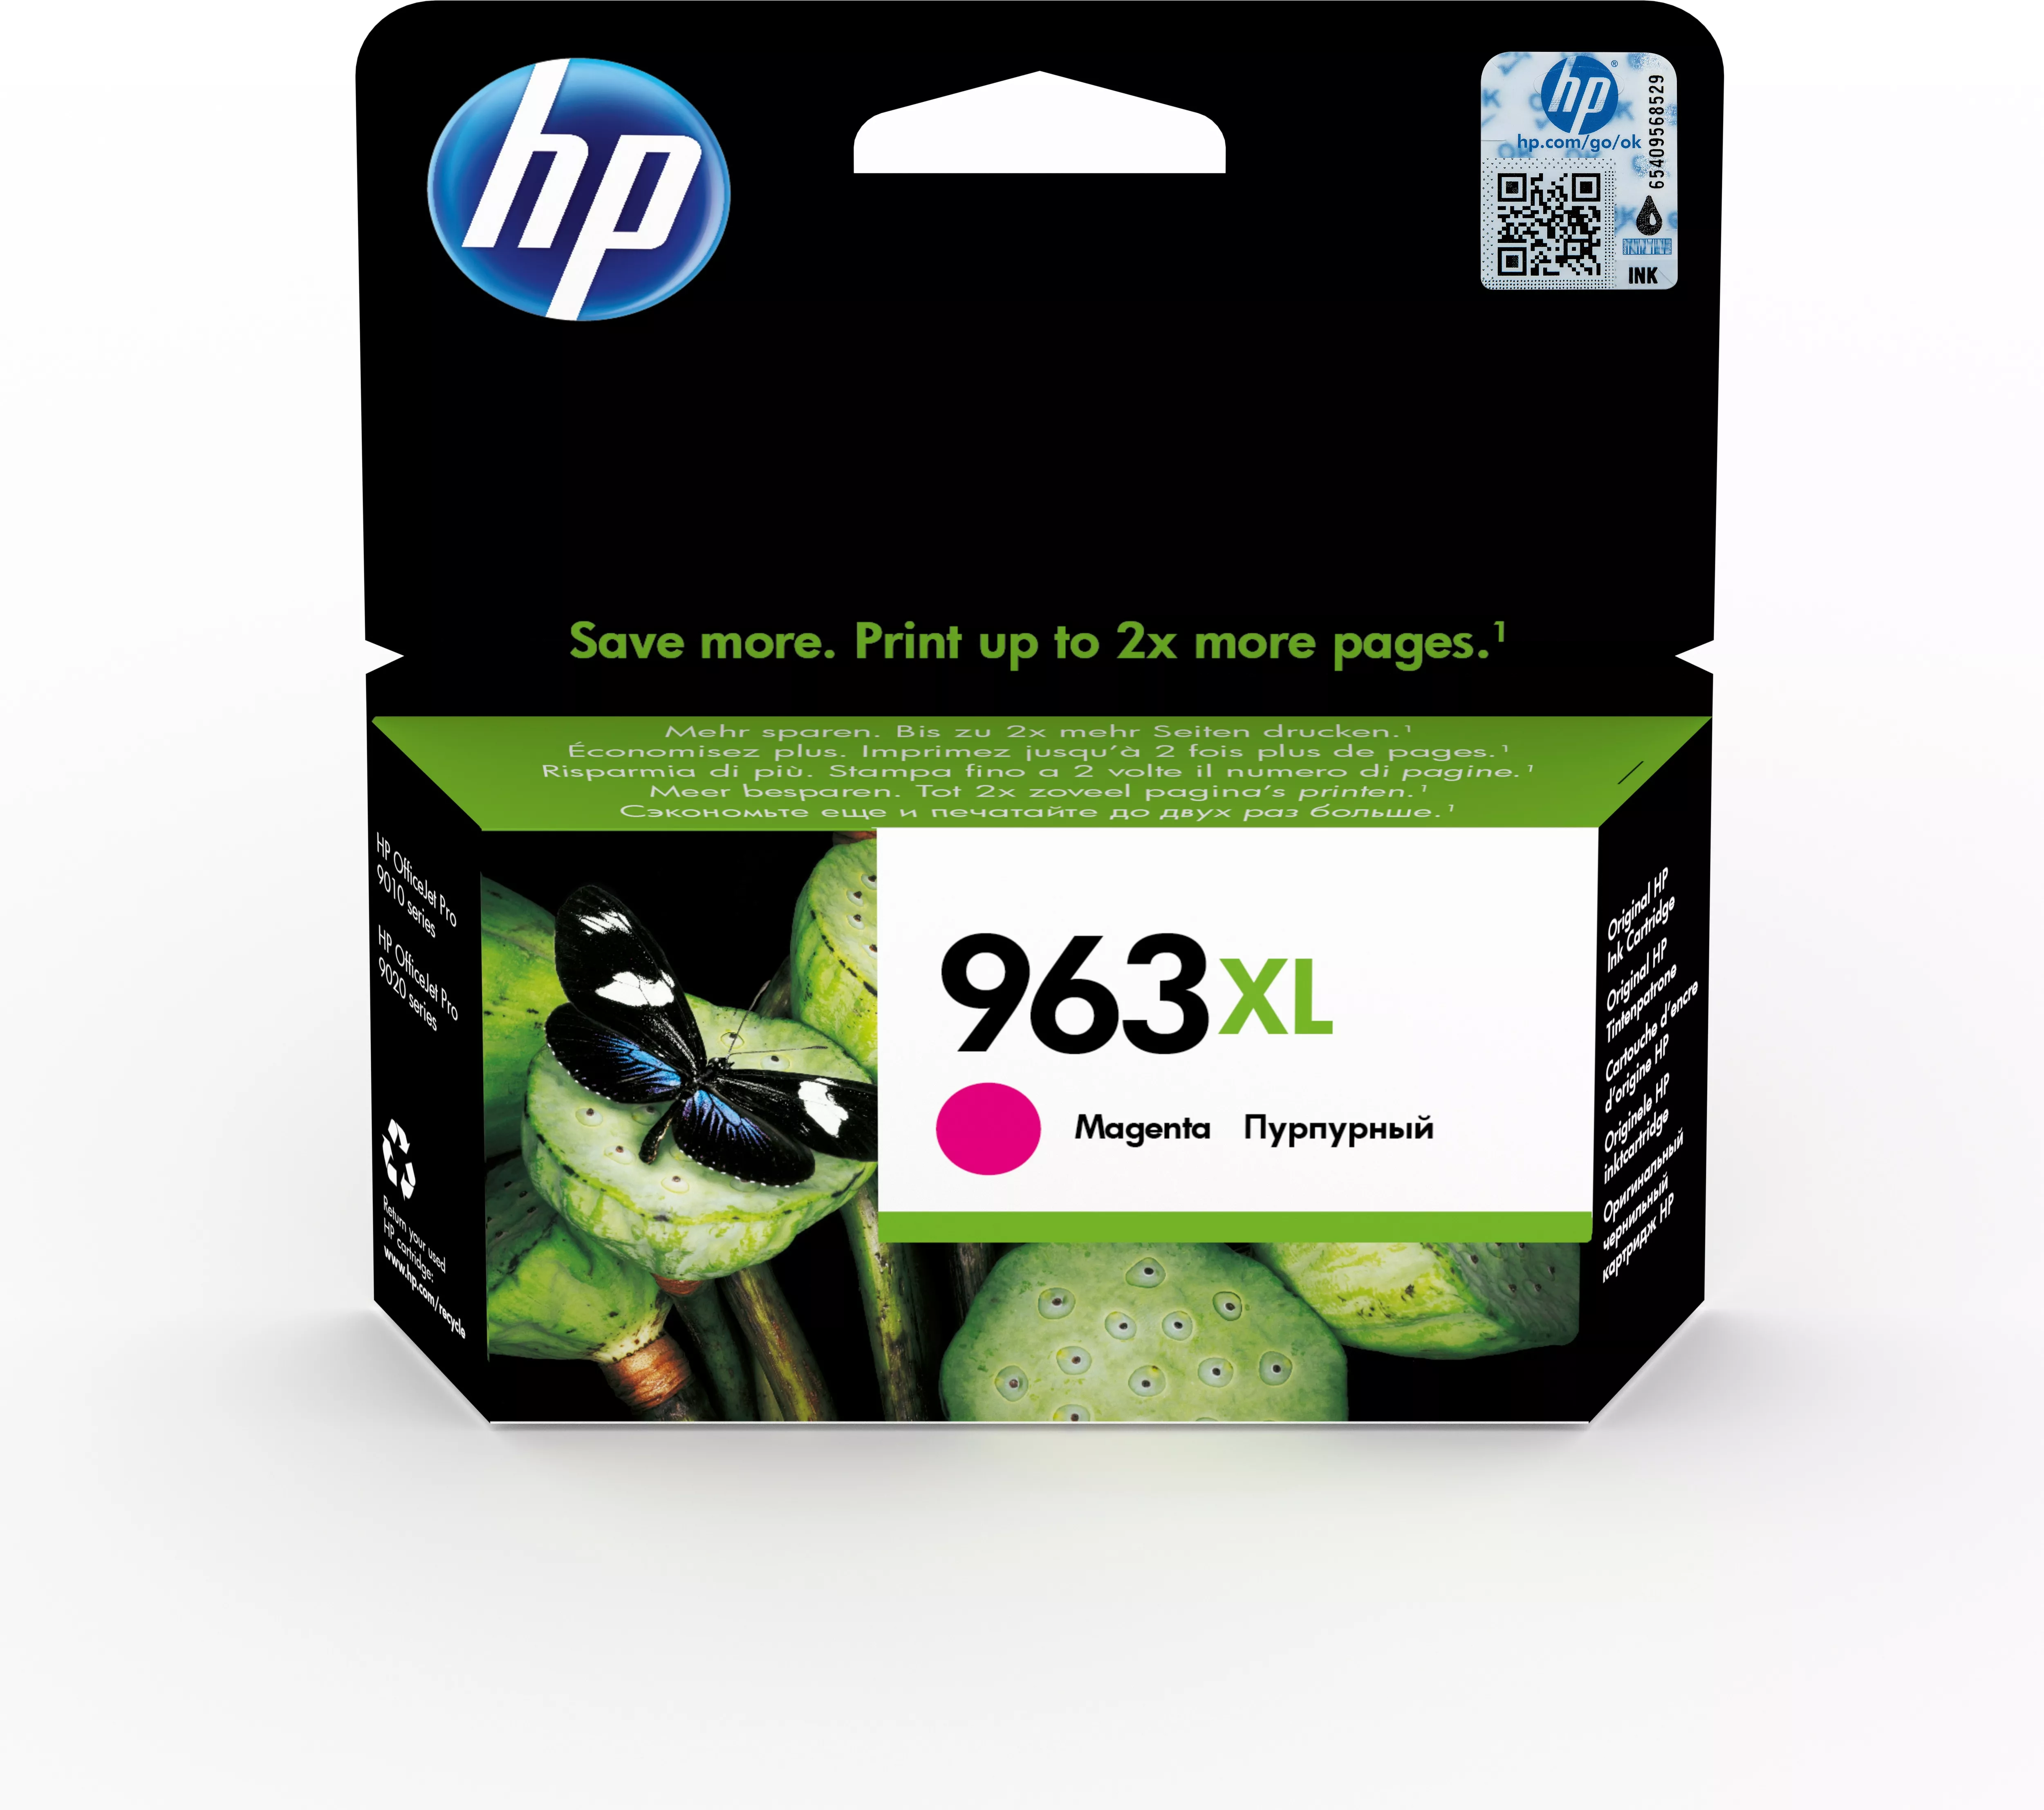 Vente HP 963XL Cartouche d'encre magenta authentique, grande au meilleur prix